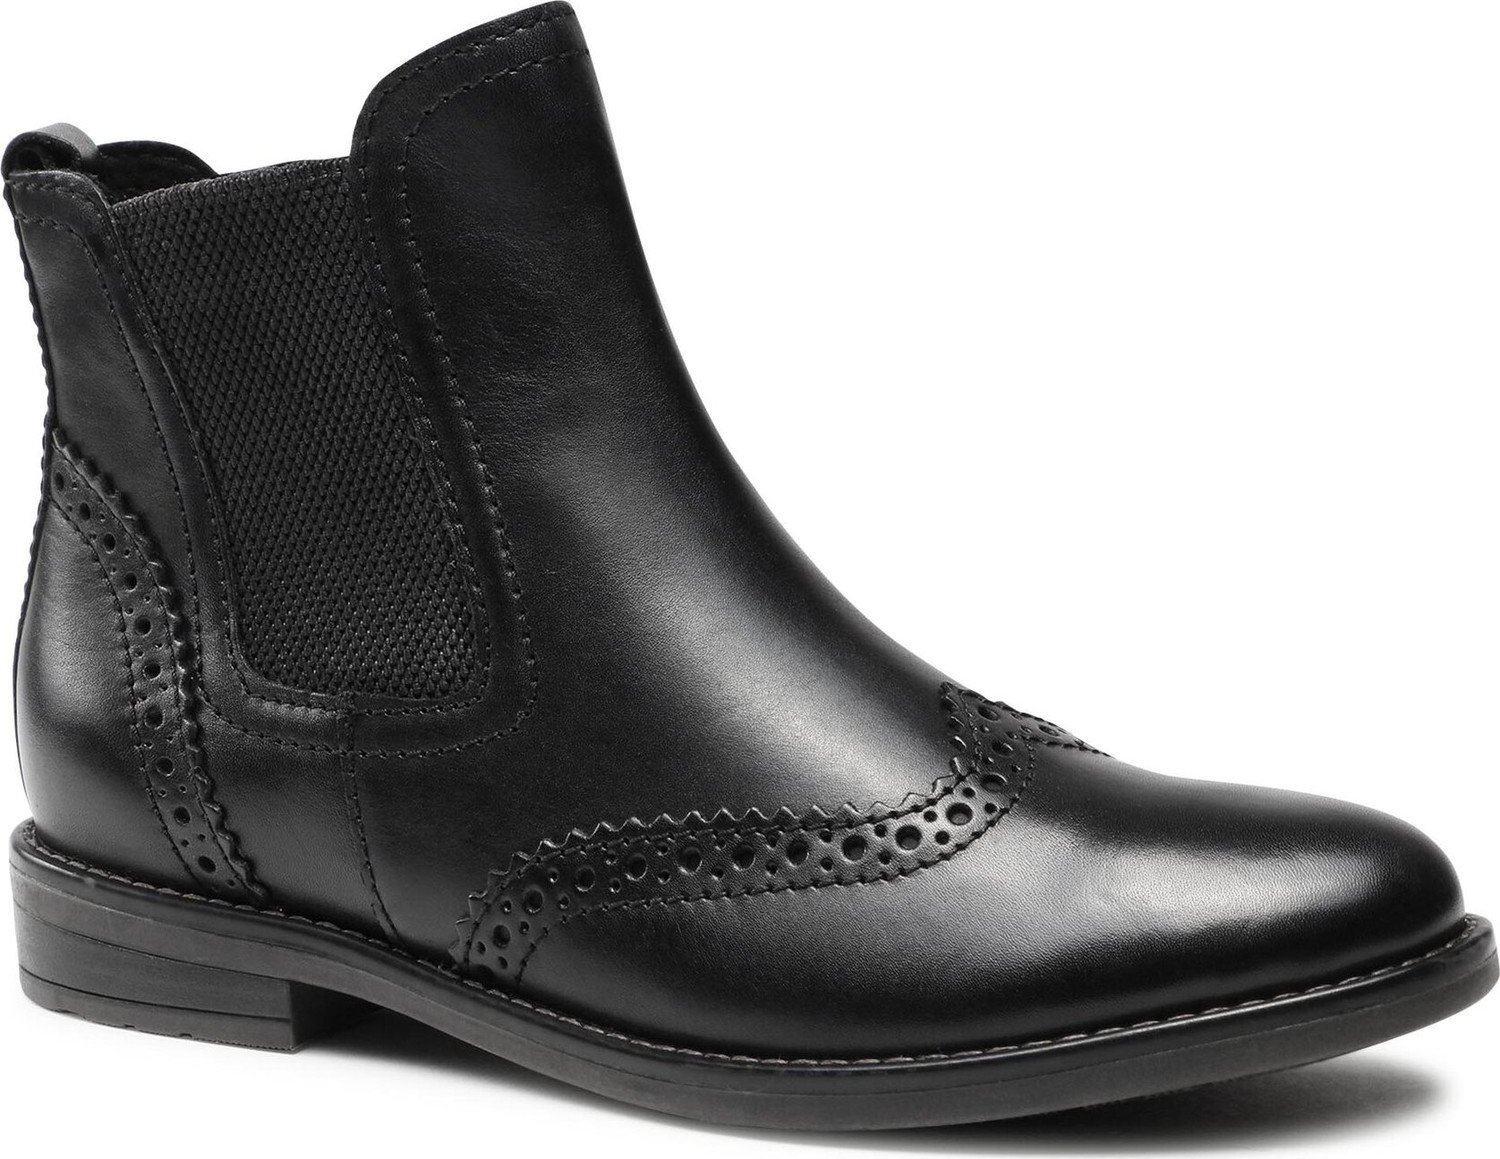 Kotníková obuv s elastickým prvkem Marco Tozzi 2-25365-41 Black 001